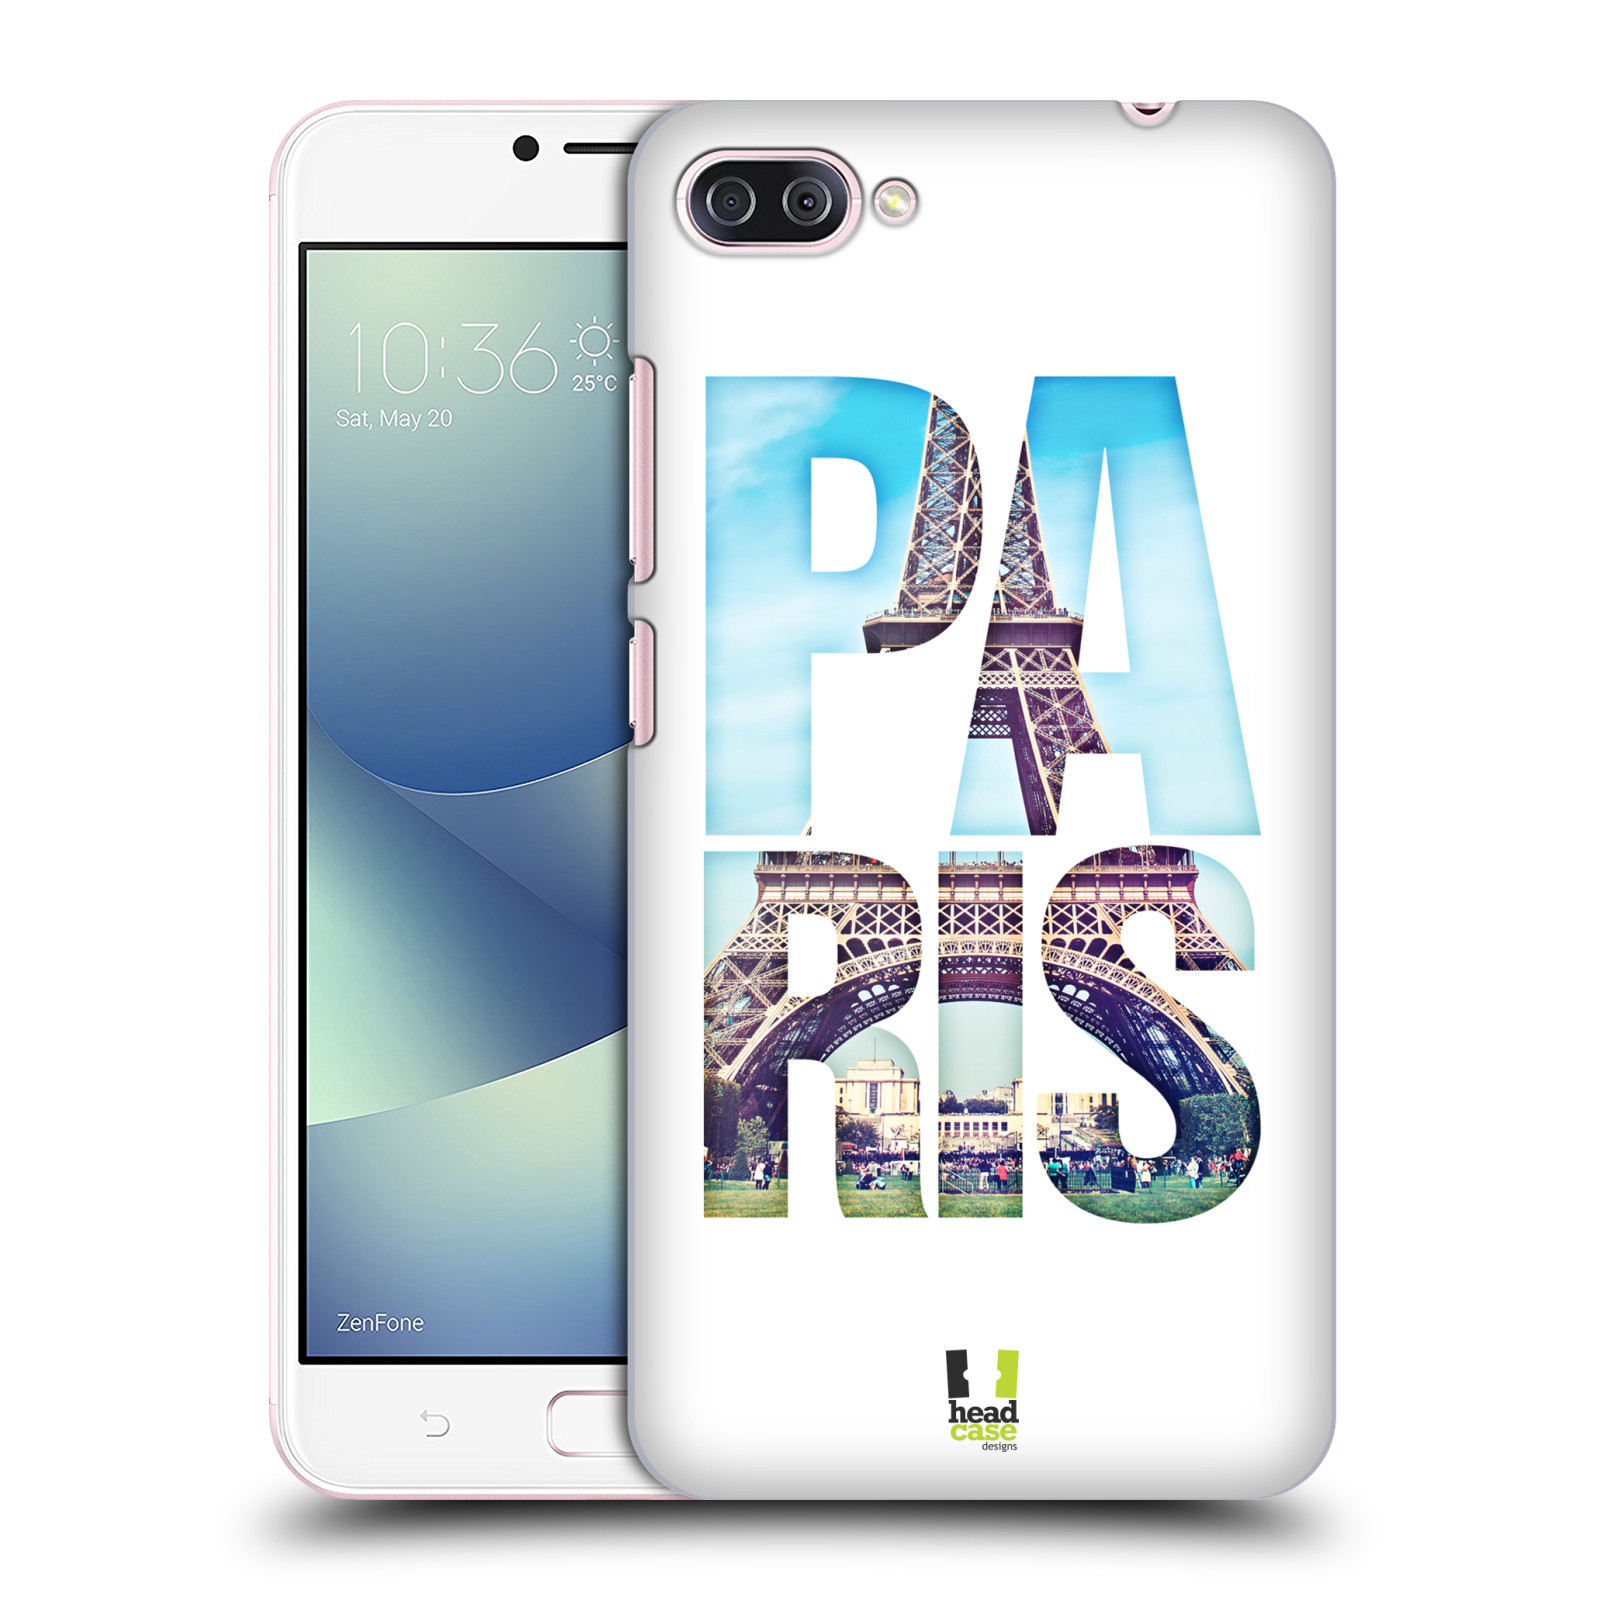 HEAD CASE plastový obal na mobil Asus Zenfone 4 MAX ZC554KL vzor Města foto a nadpis FRANCIE, PAŘÍŽ, EIFFELOVA VĚŽ